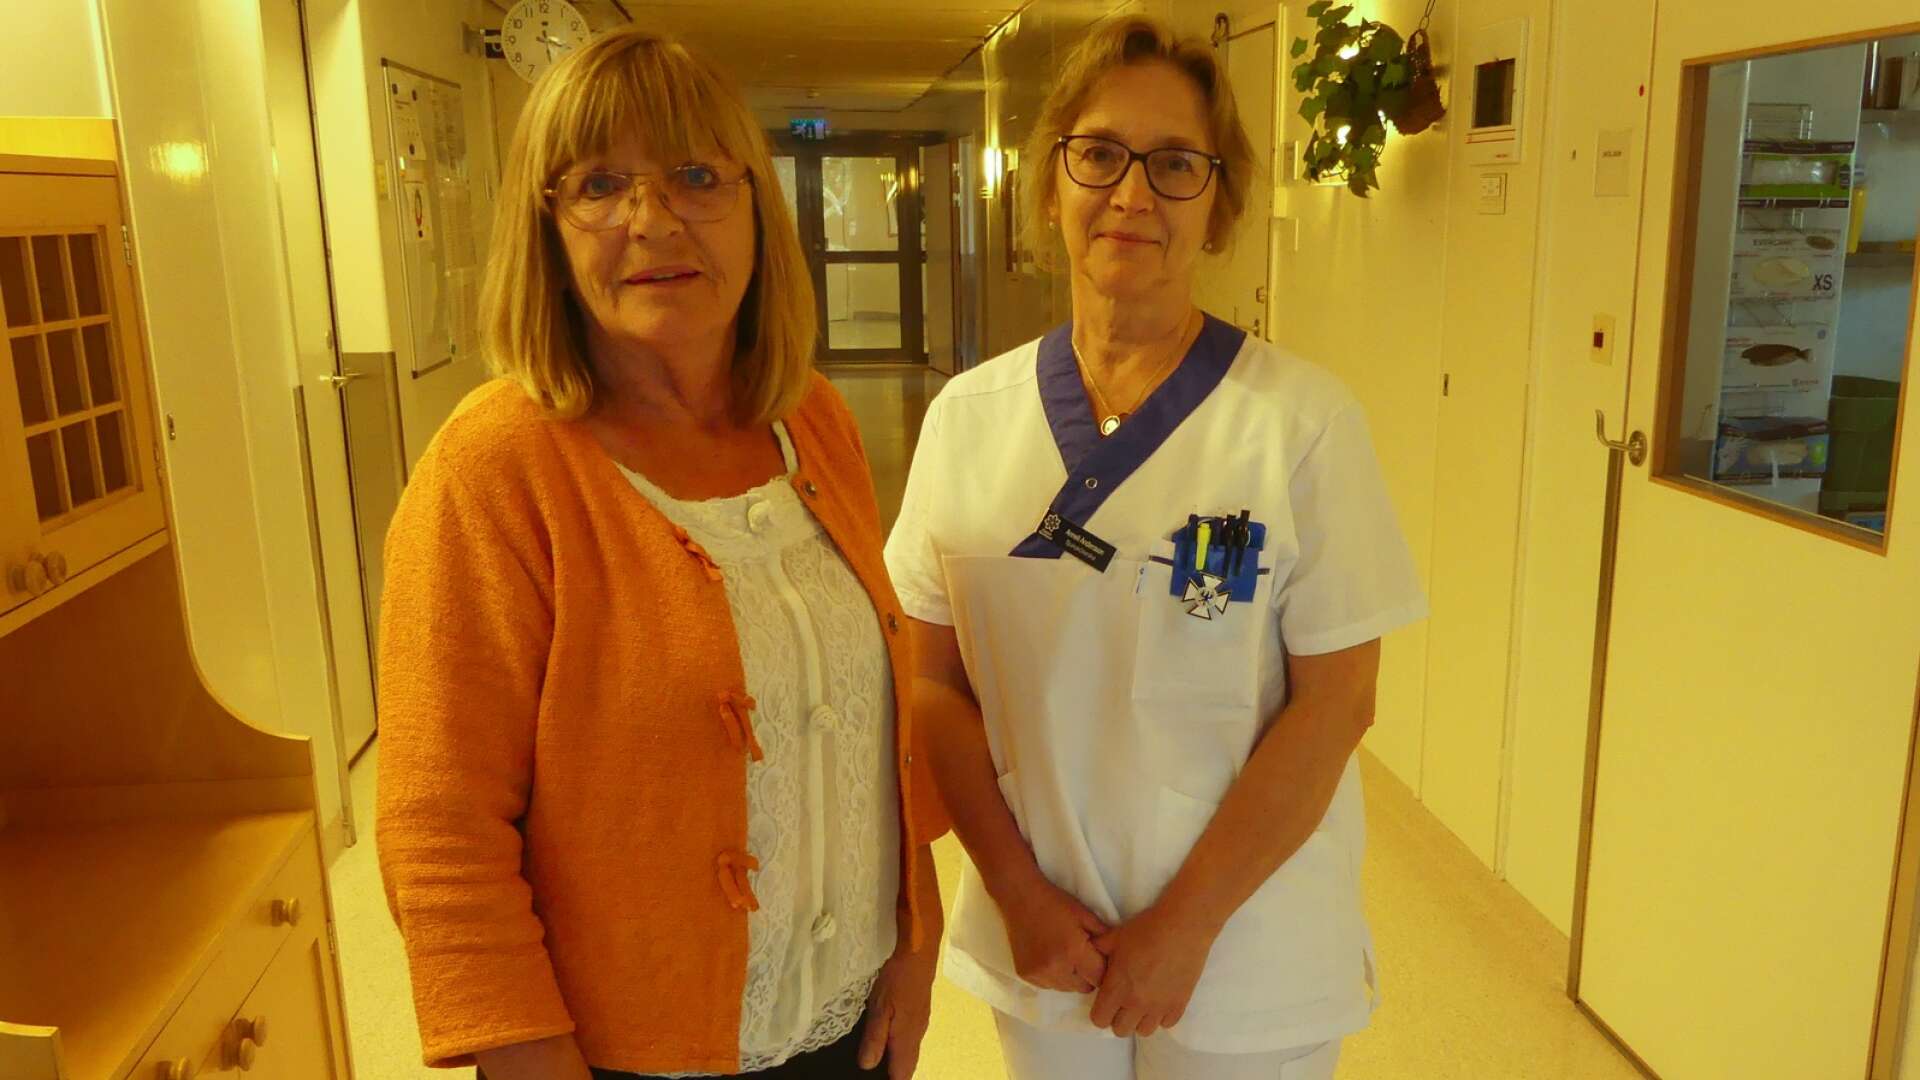 Säffle är först i Region Värmland med en vårdsamordnare för patienter med psykisk ohälsa. Enhetschefen på vårdcentralen Säffle-Nysäter Gunilla Jonasson, ses här tillsammans med sjuksköterskan Annelie Andersson som tidigare jobbat som vårdsamordnare i Västra Götalandsregionen.